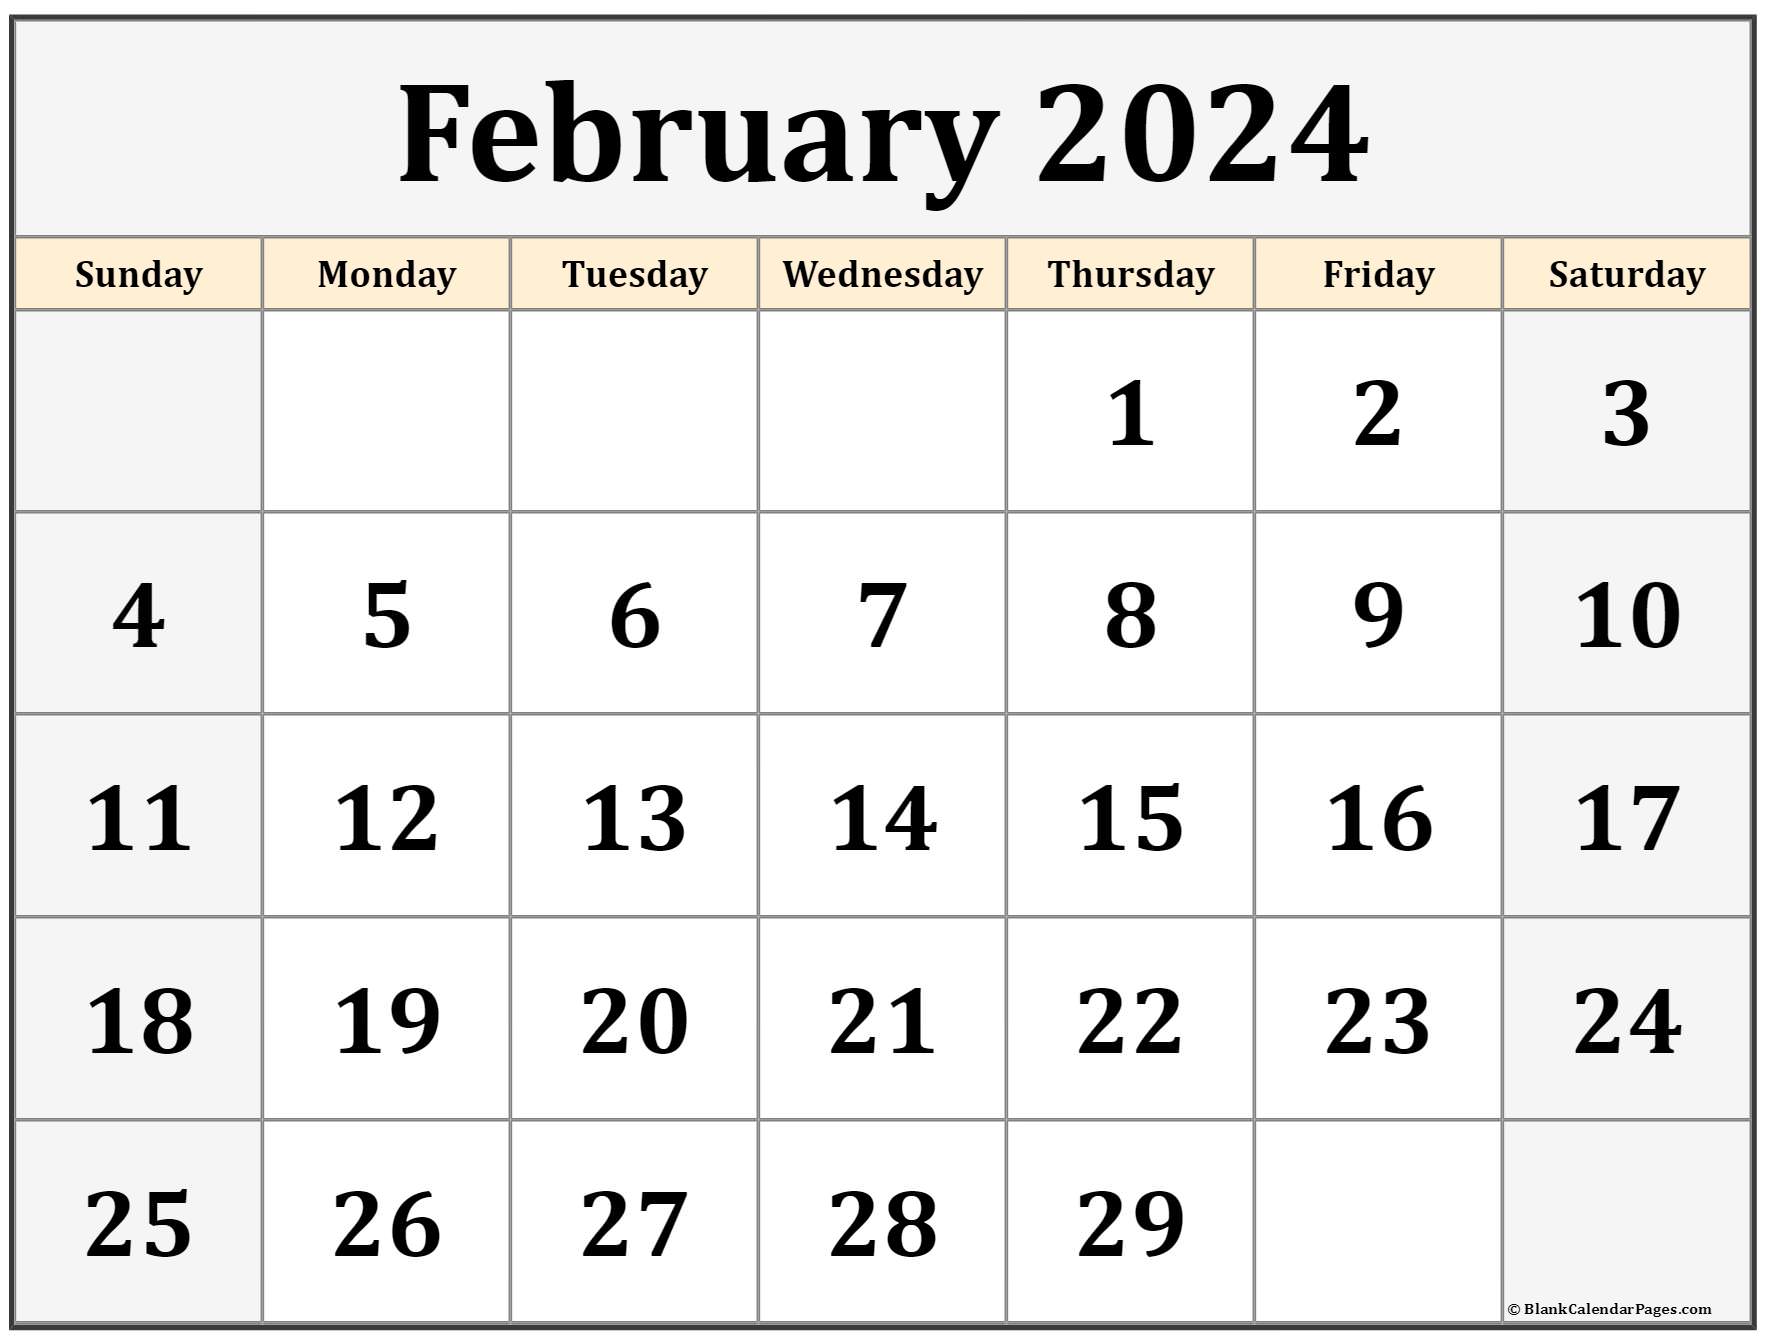 February 2024 calendar free printable calendar